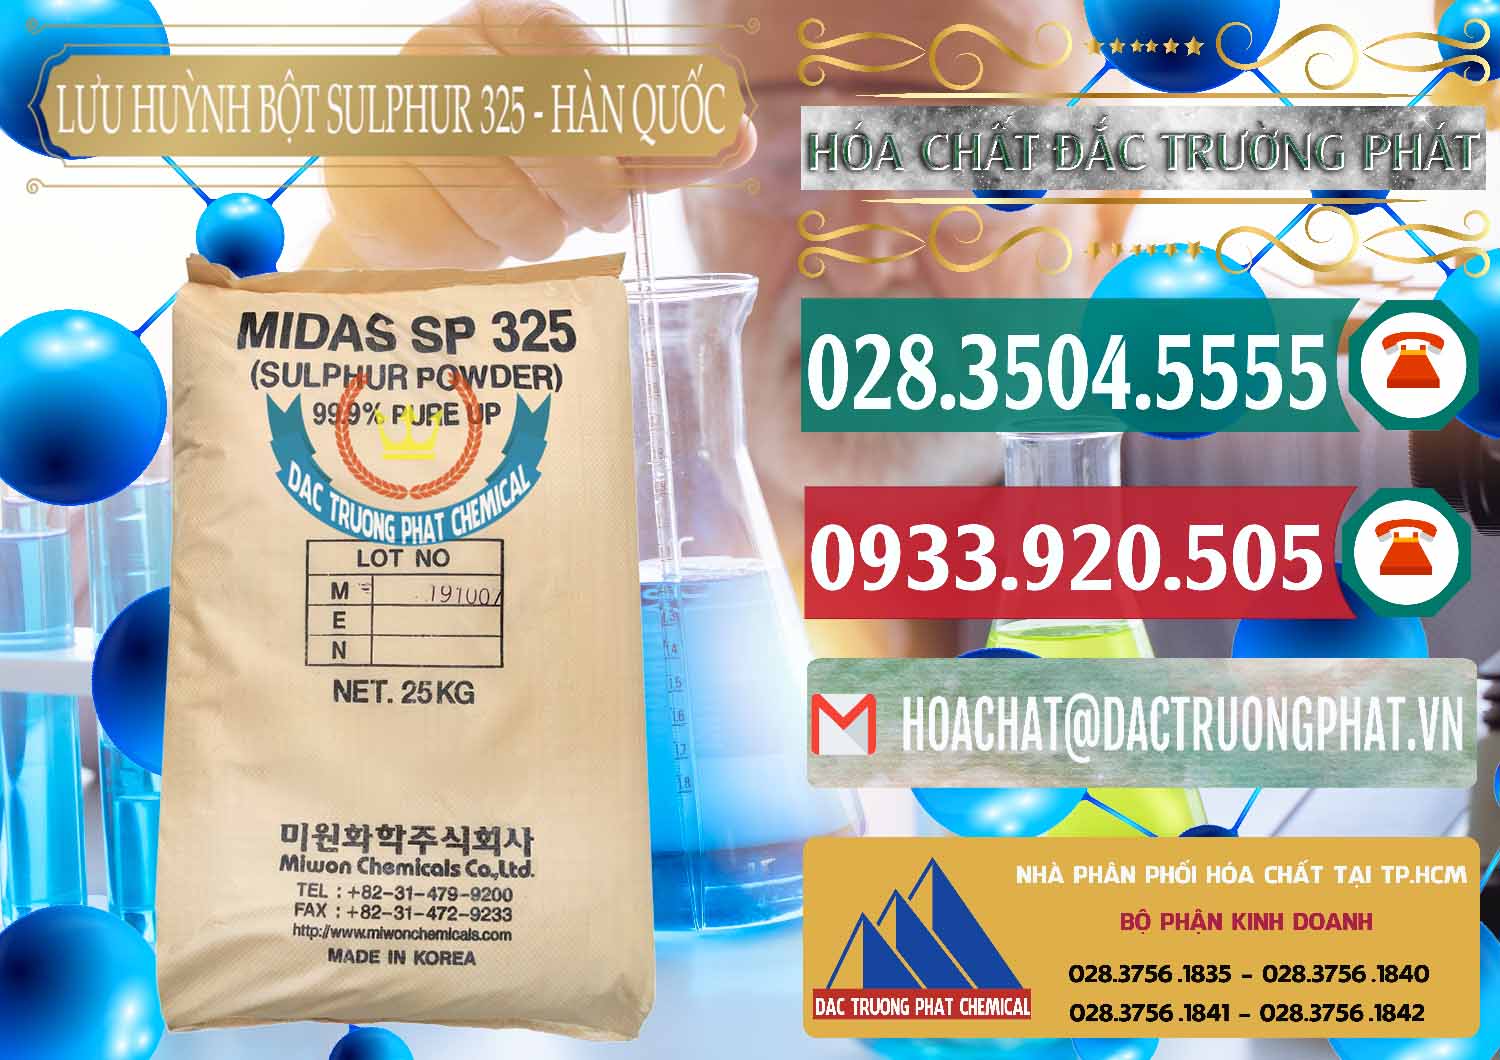 Cty chuyên bán & cung cấp Lưu huỳnh Bột - Sulfur Powder Midas SP 325 Hàn Quốc Korea - 0198 - Cung cấp & phân phối hóa chất tại TP.HCM - muabanhoachat.vn